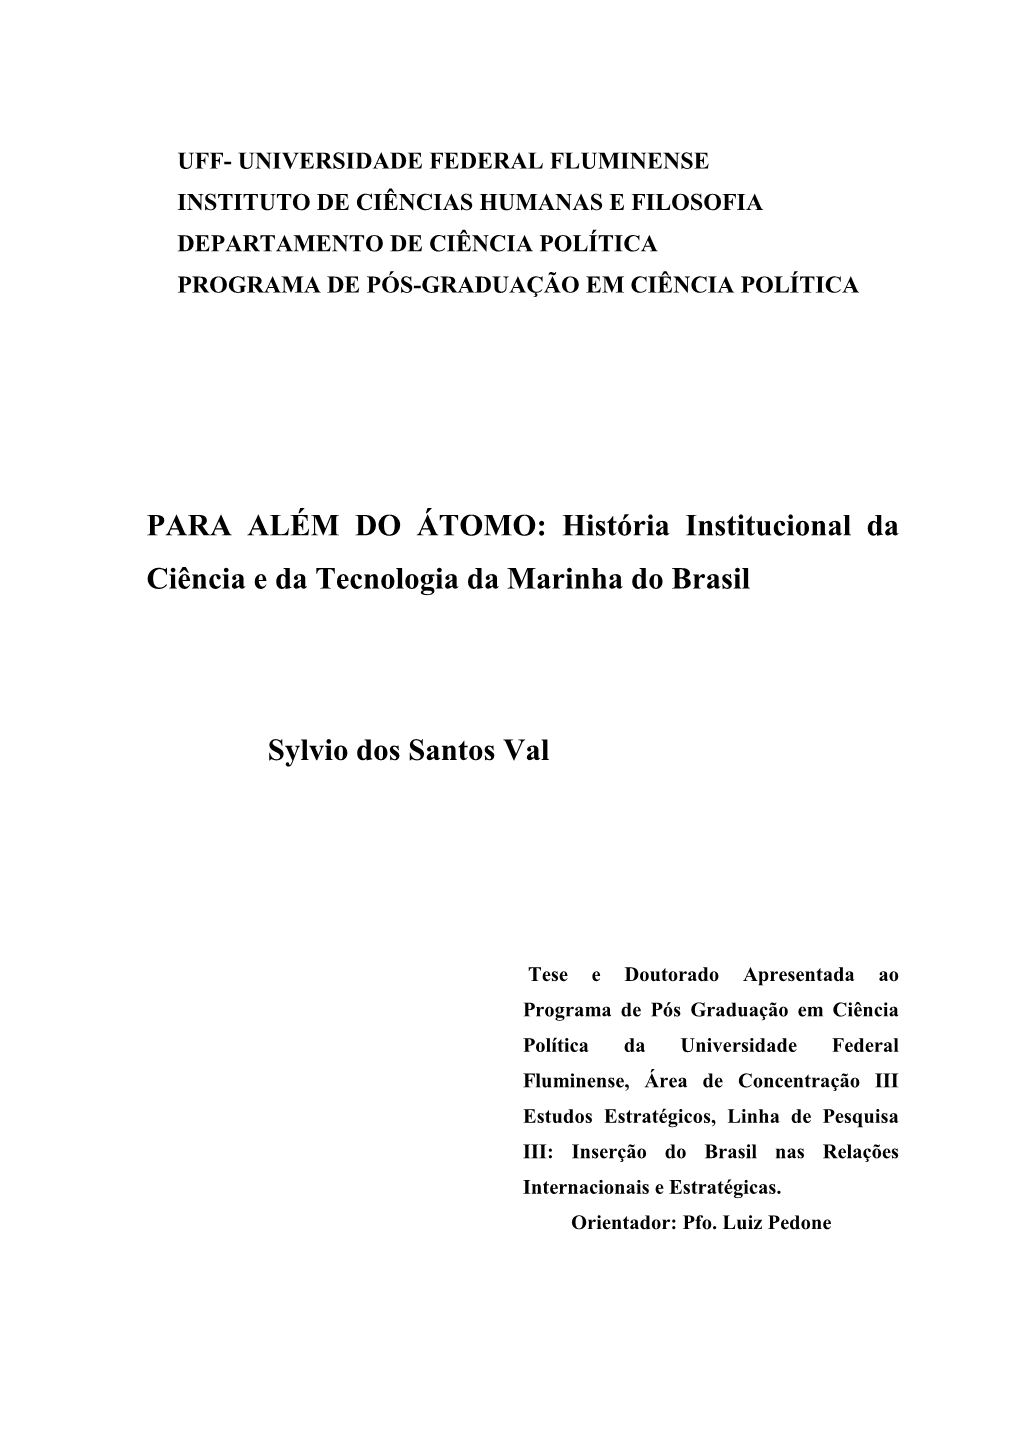 PARA ALÉM DO ÁTOMO: História Institucional Da Ciência E Da Tecnologia Da Marinha Do Brasil